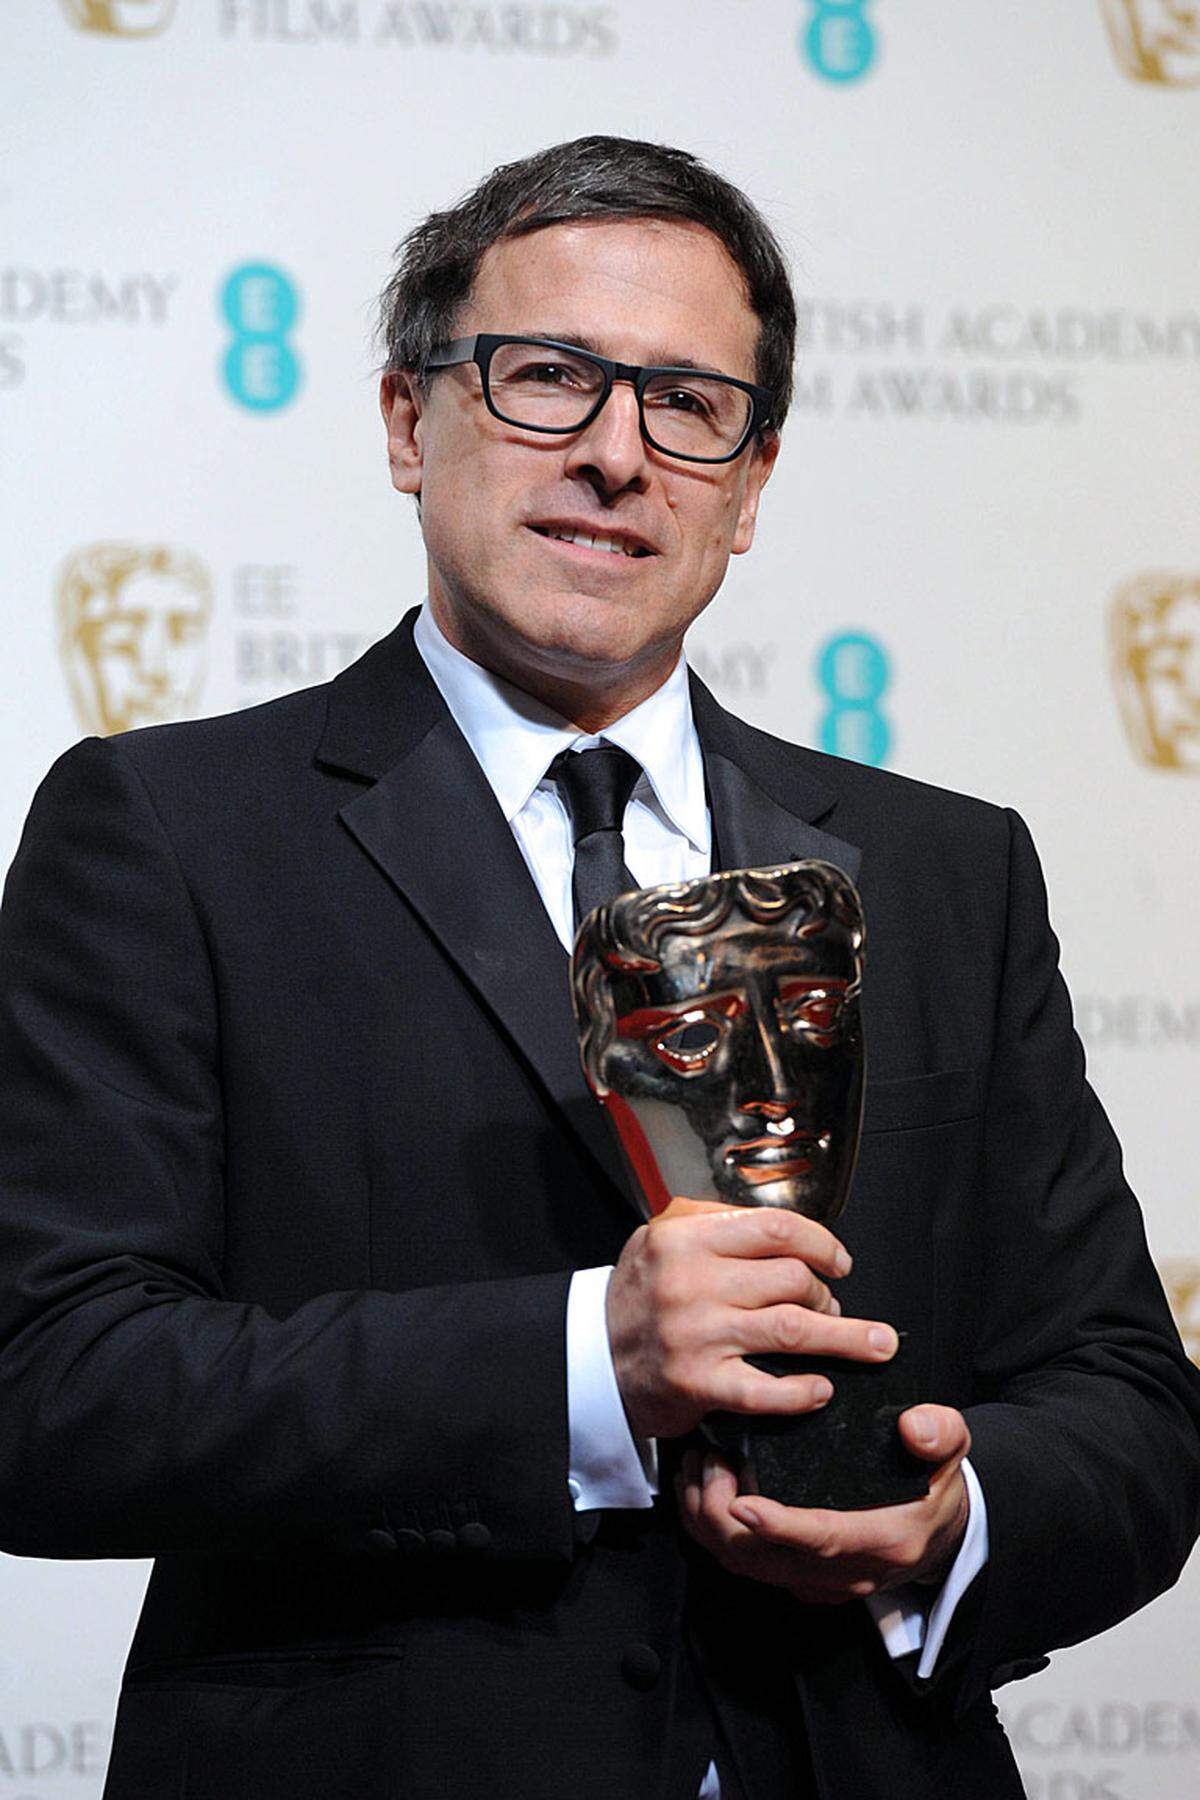 Regisseur David O. Russell wurde für die beste Drehbuch-Adaption für die schräge Liebeskomödie "Silver Linings" ausgezeichnet.